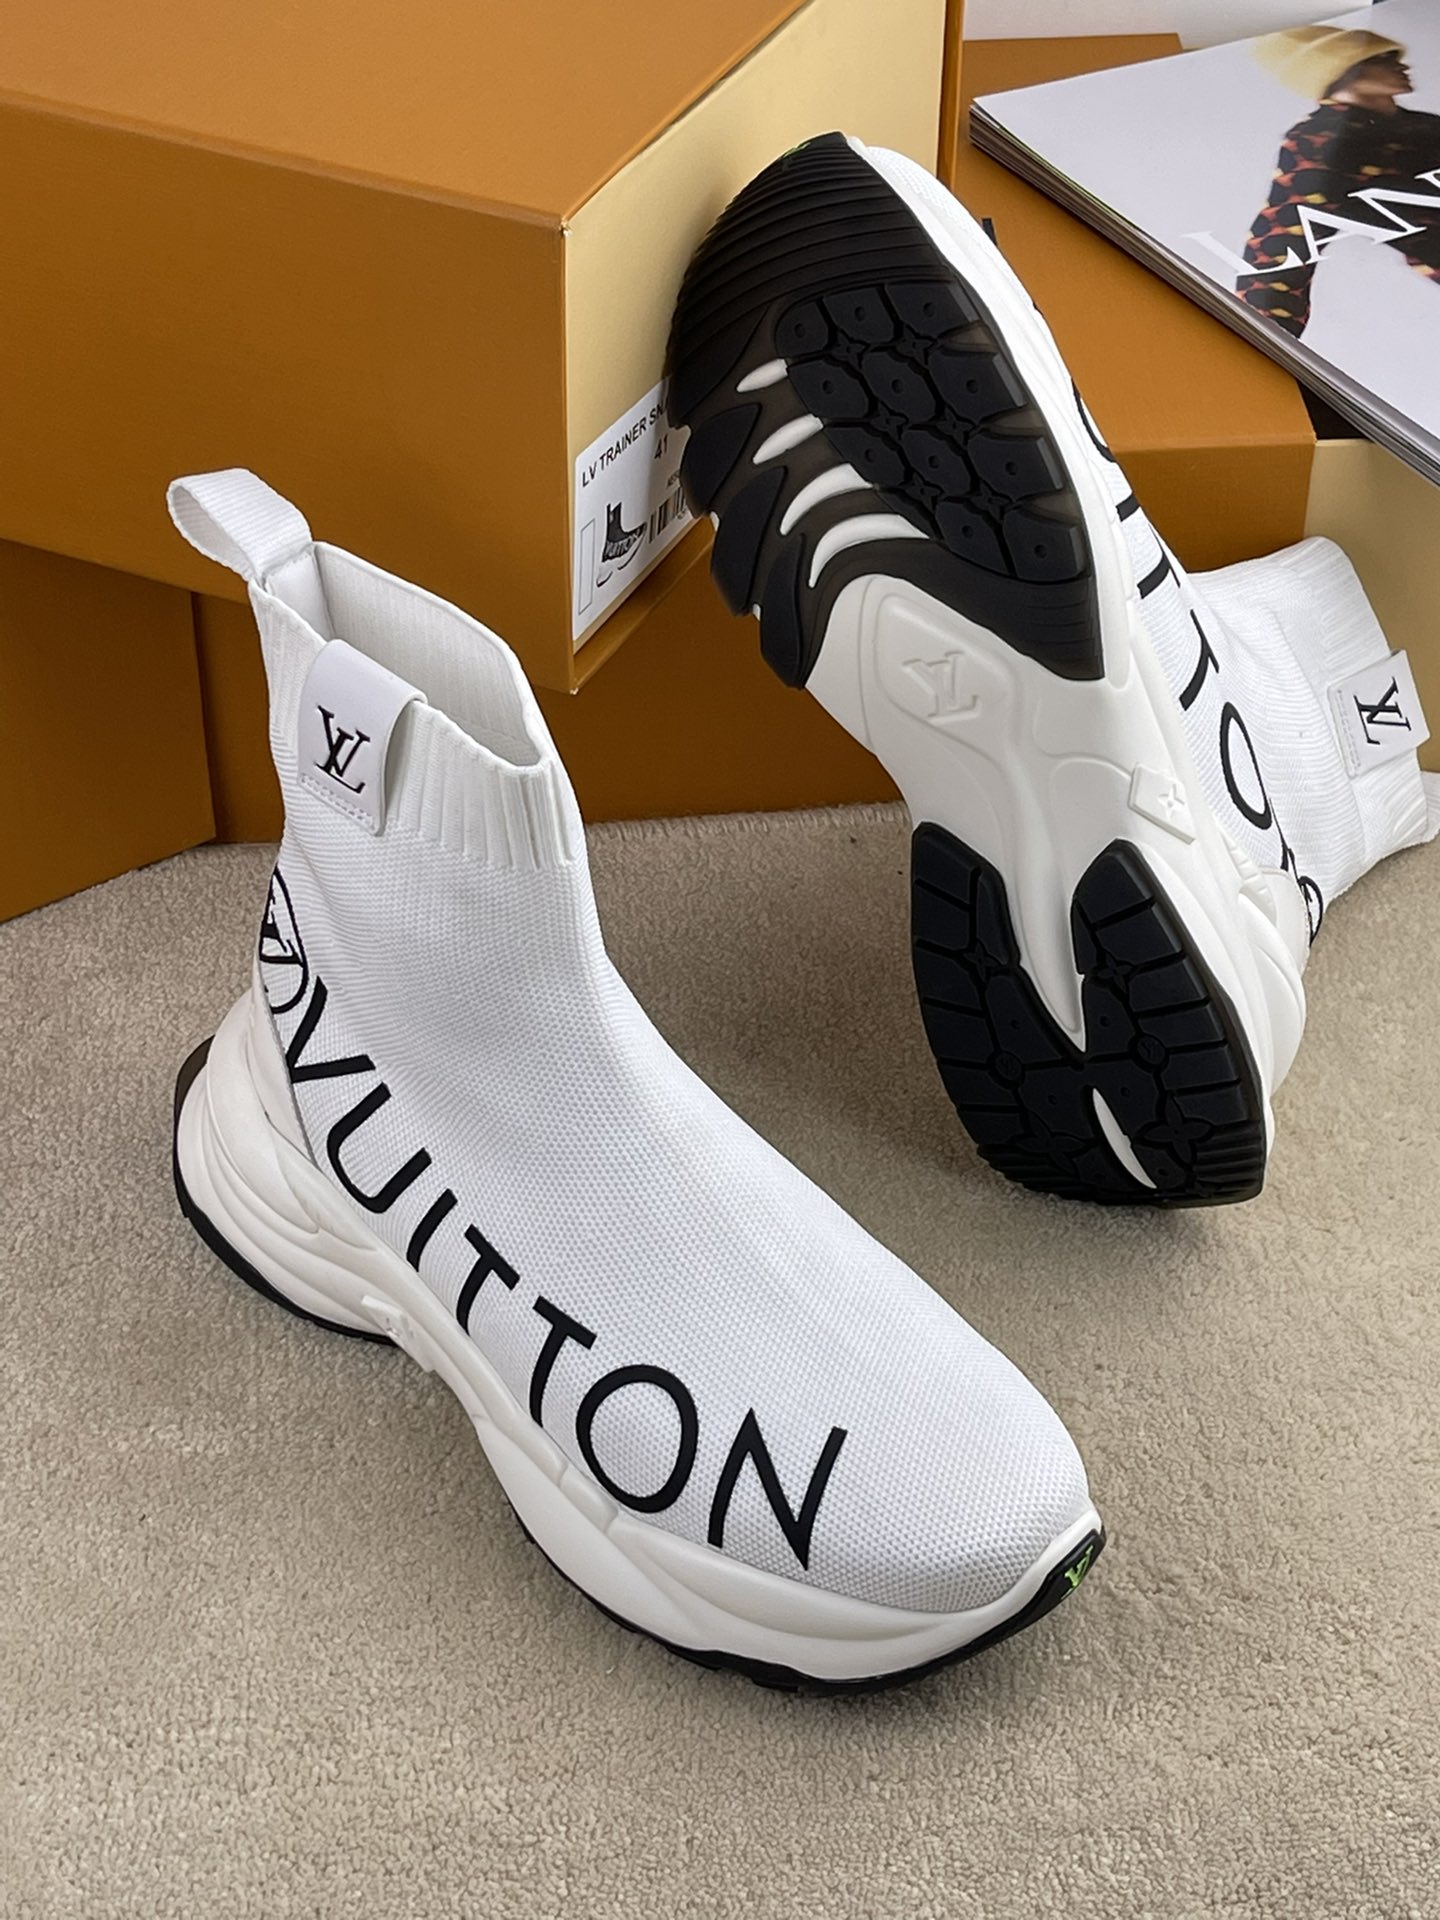 Louis Vuitton Run 55 Sneaker Boot For Men # 263019, cheap Louis Vuitton Boots, only $89!